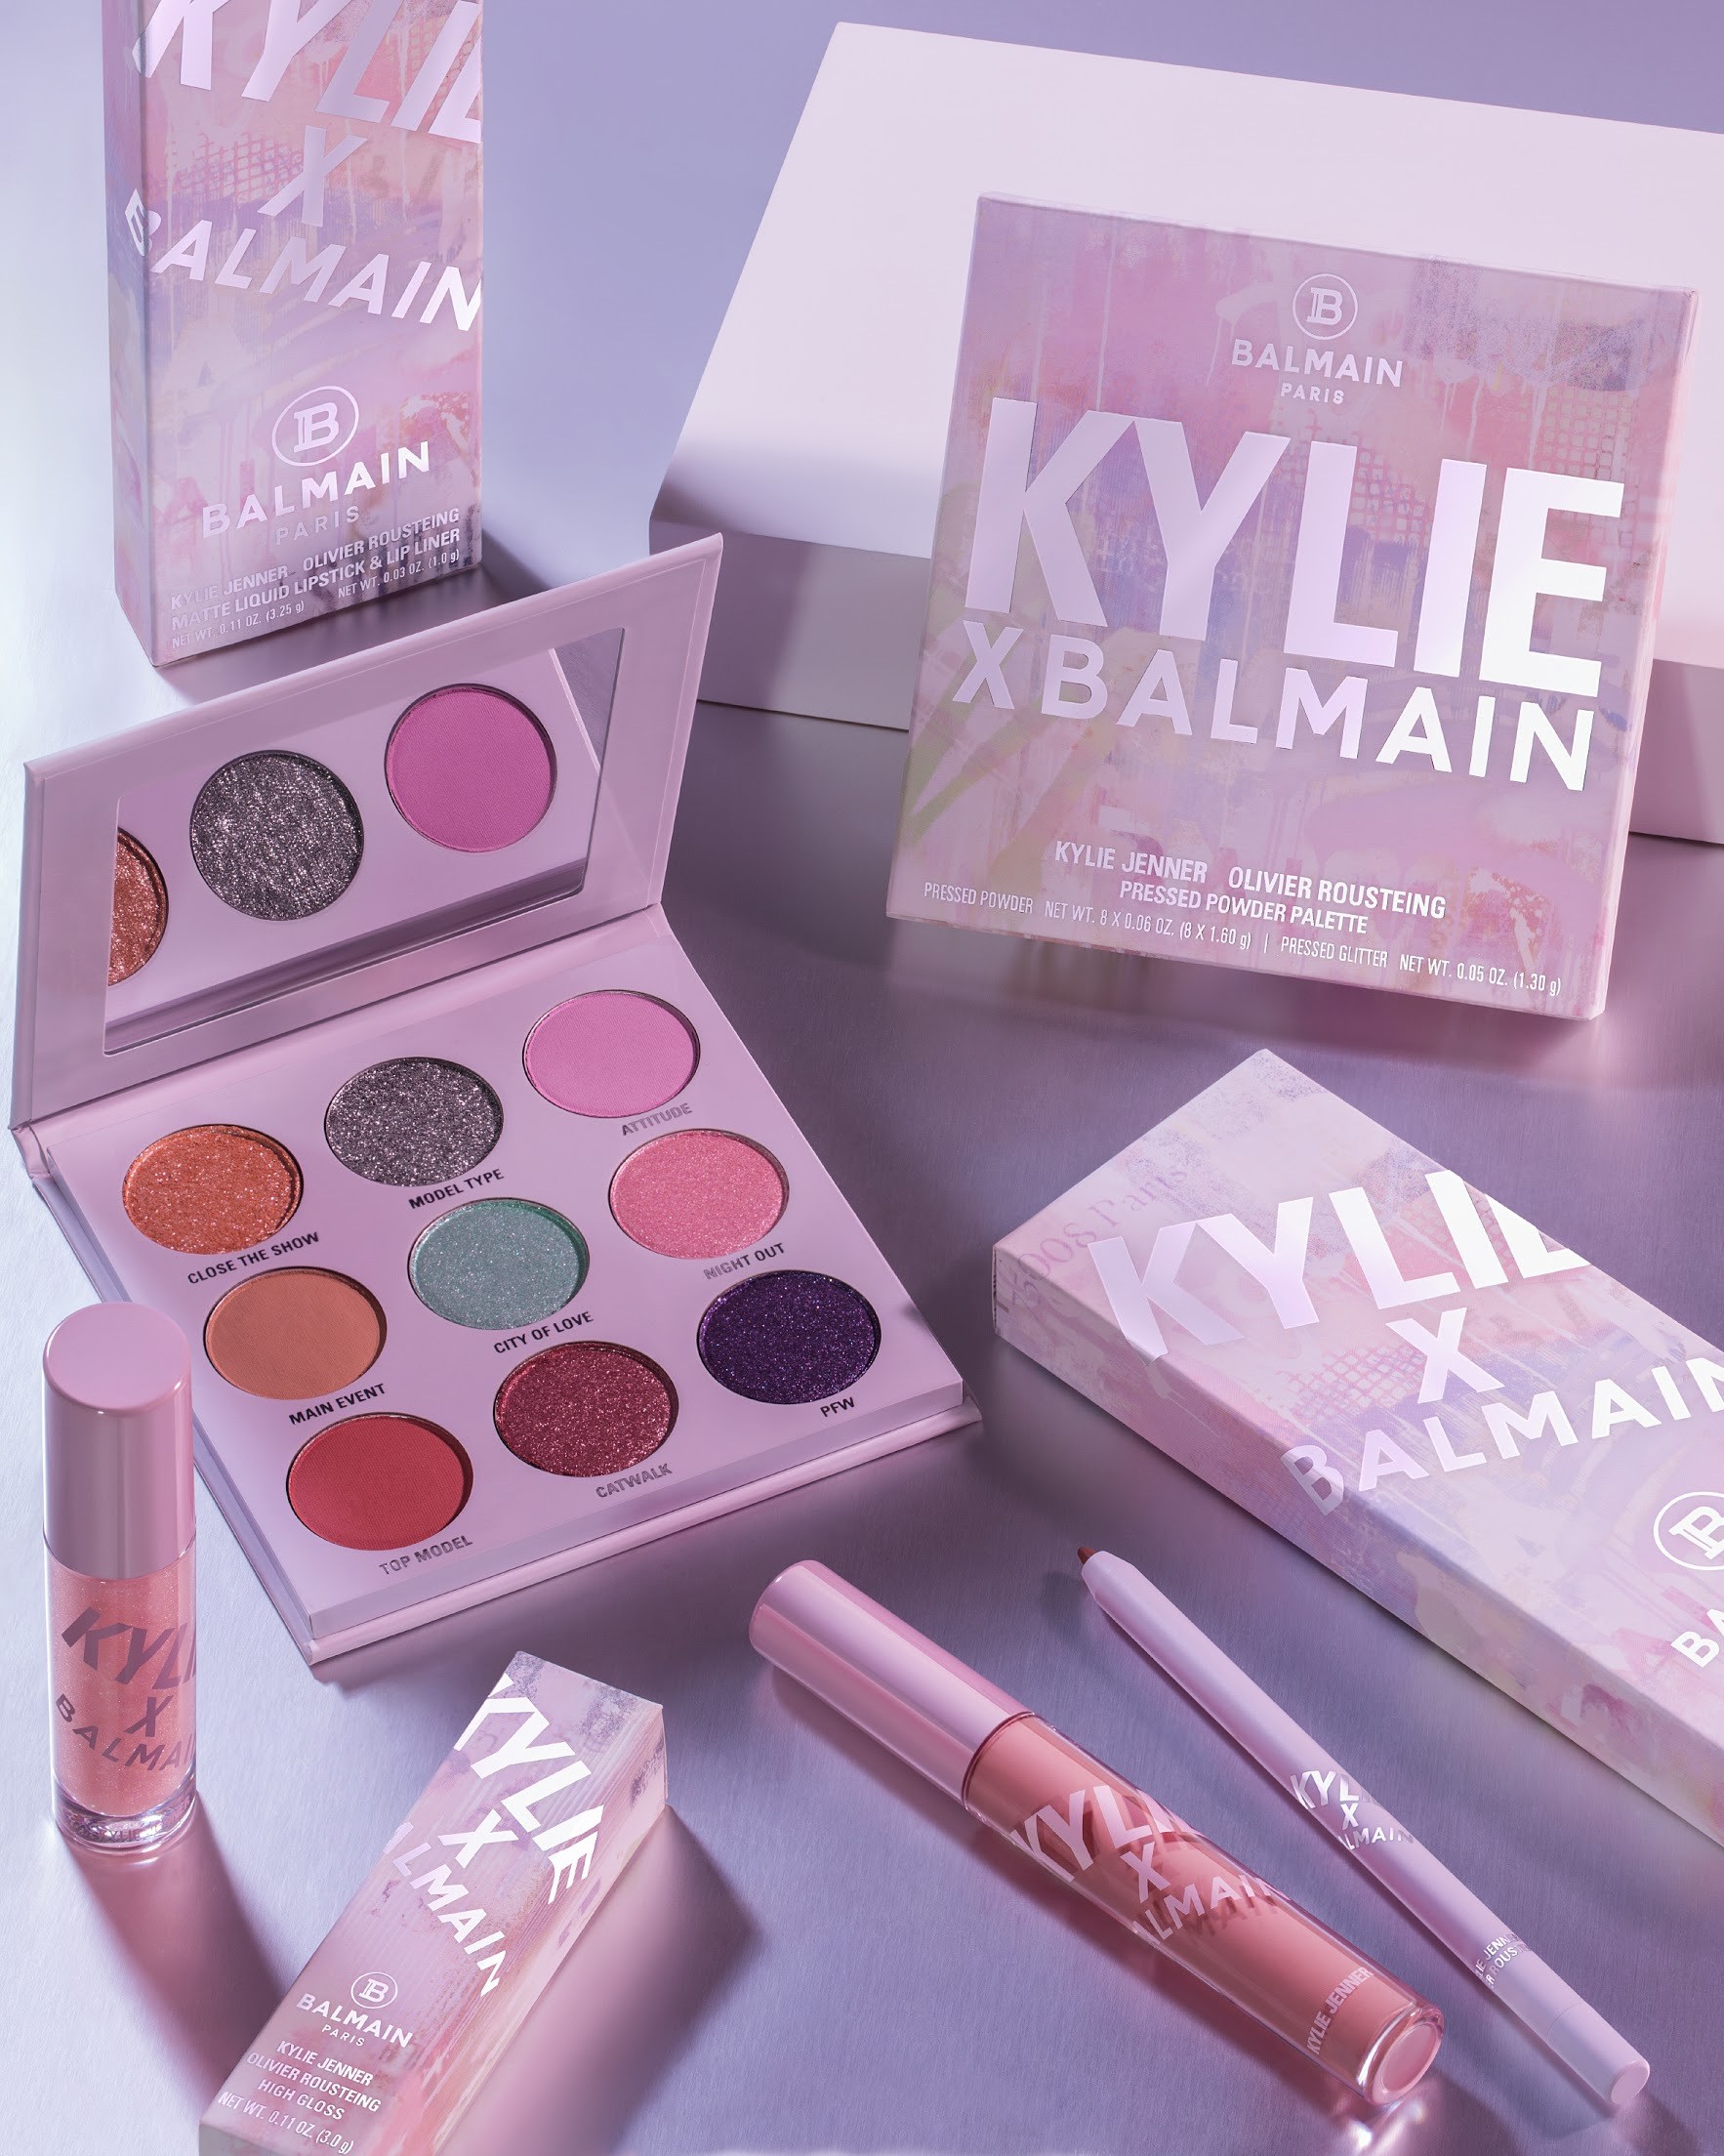 A coleção de maquiagem que marca a parceria Kylie Cosmetics x Balmain (Foto: Divulgação)